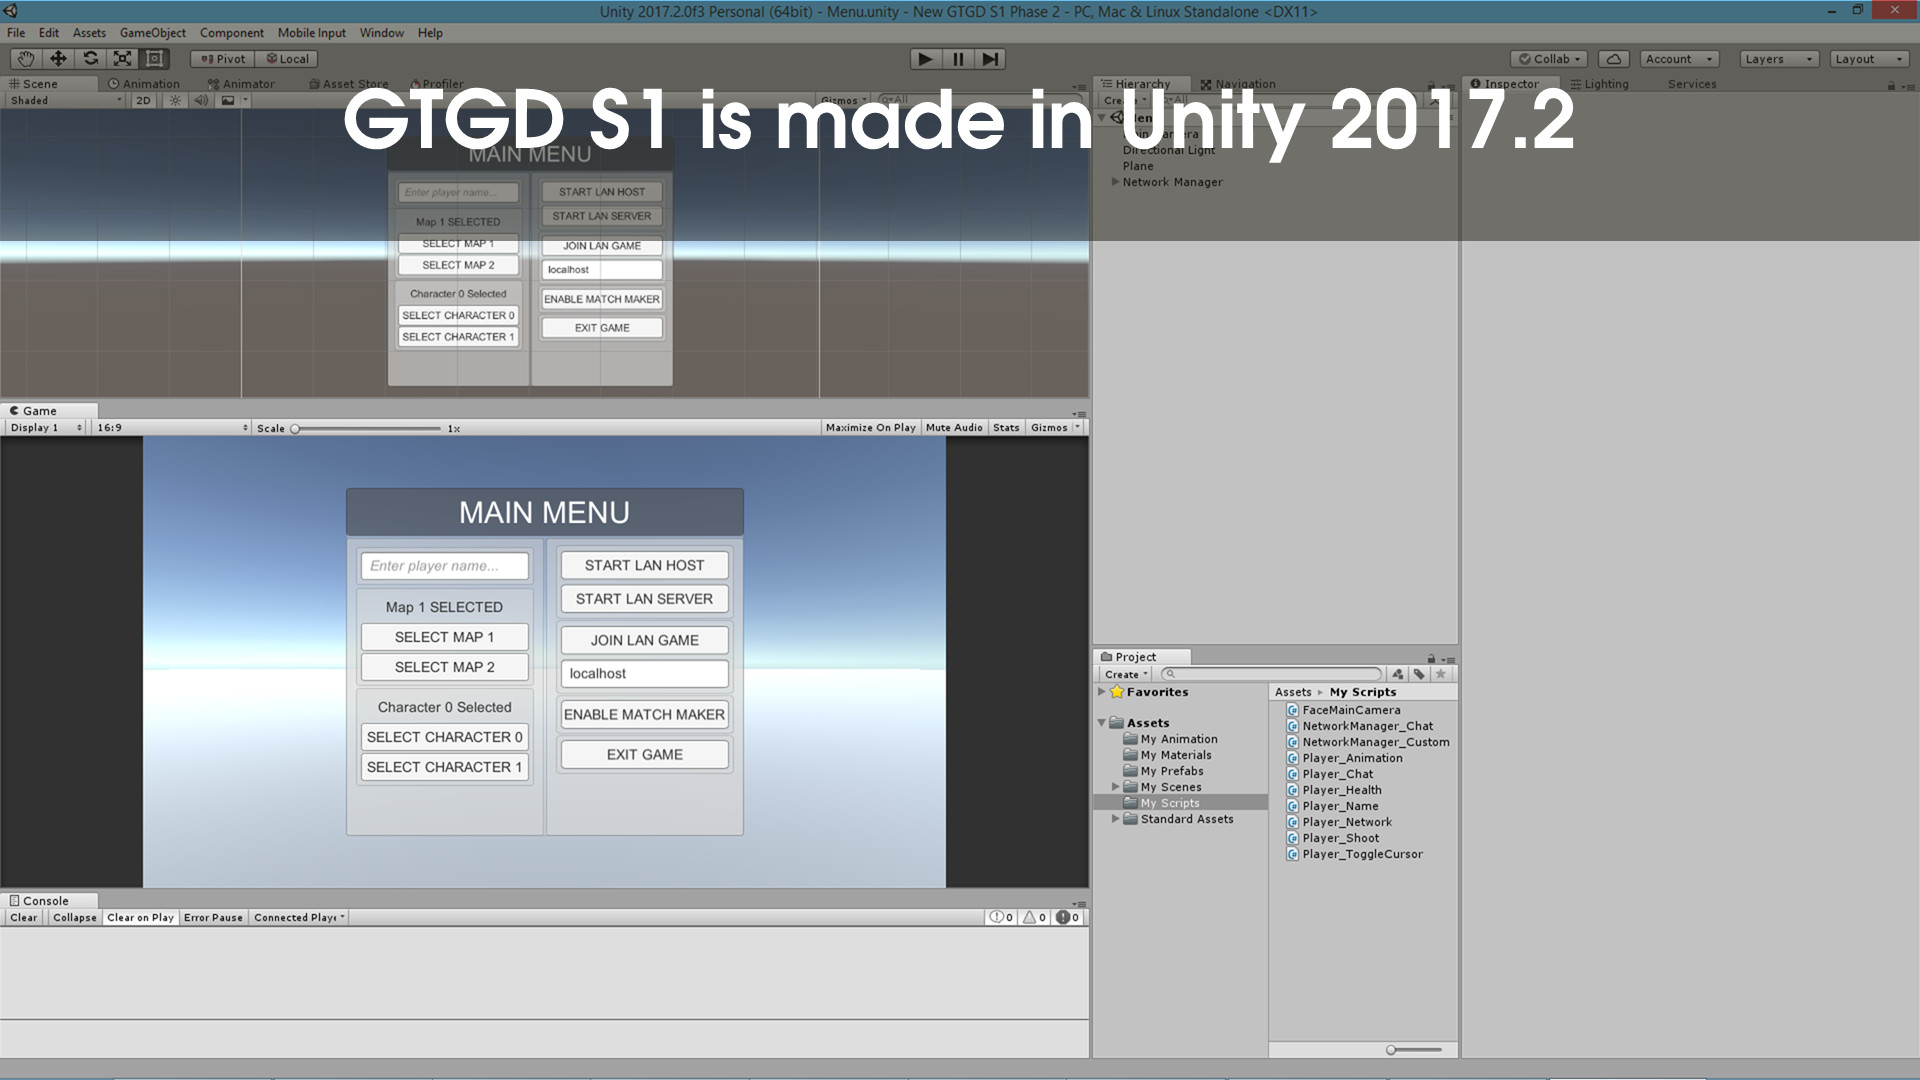 GTGD S1: More Than a Gamer screenshot